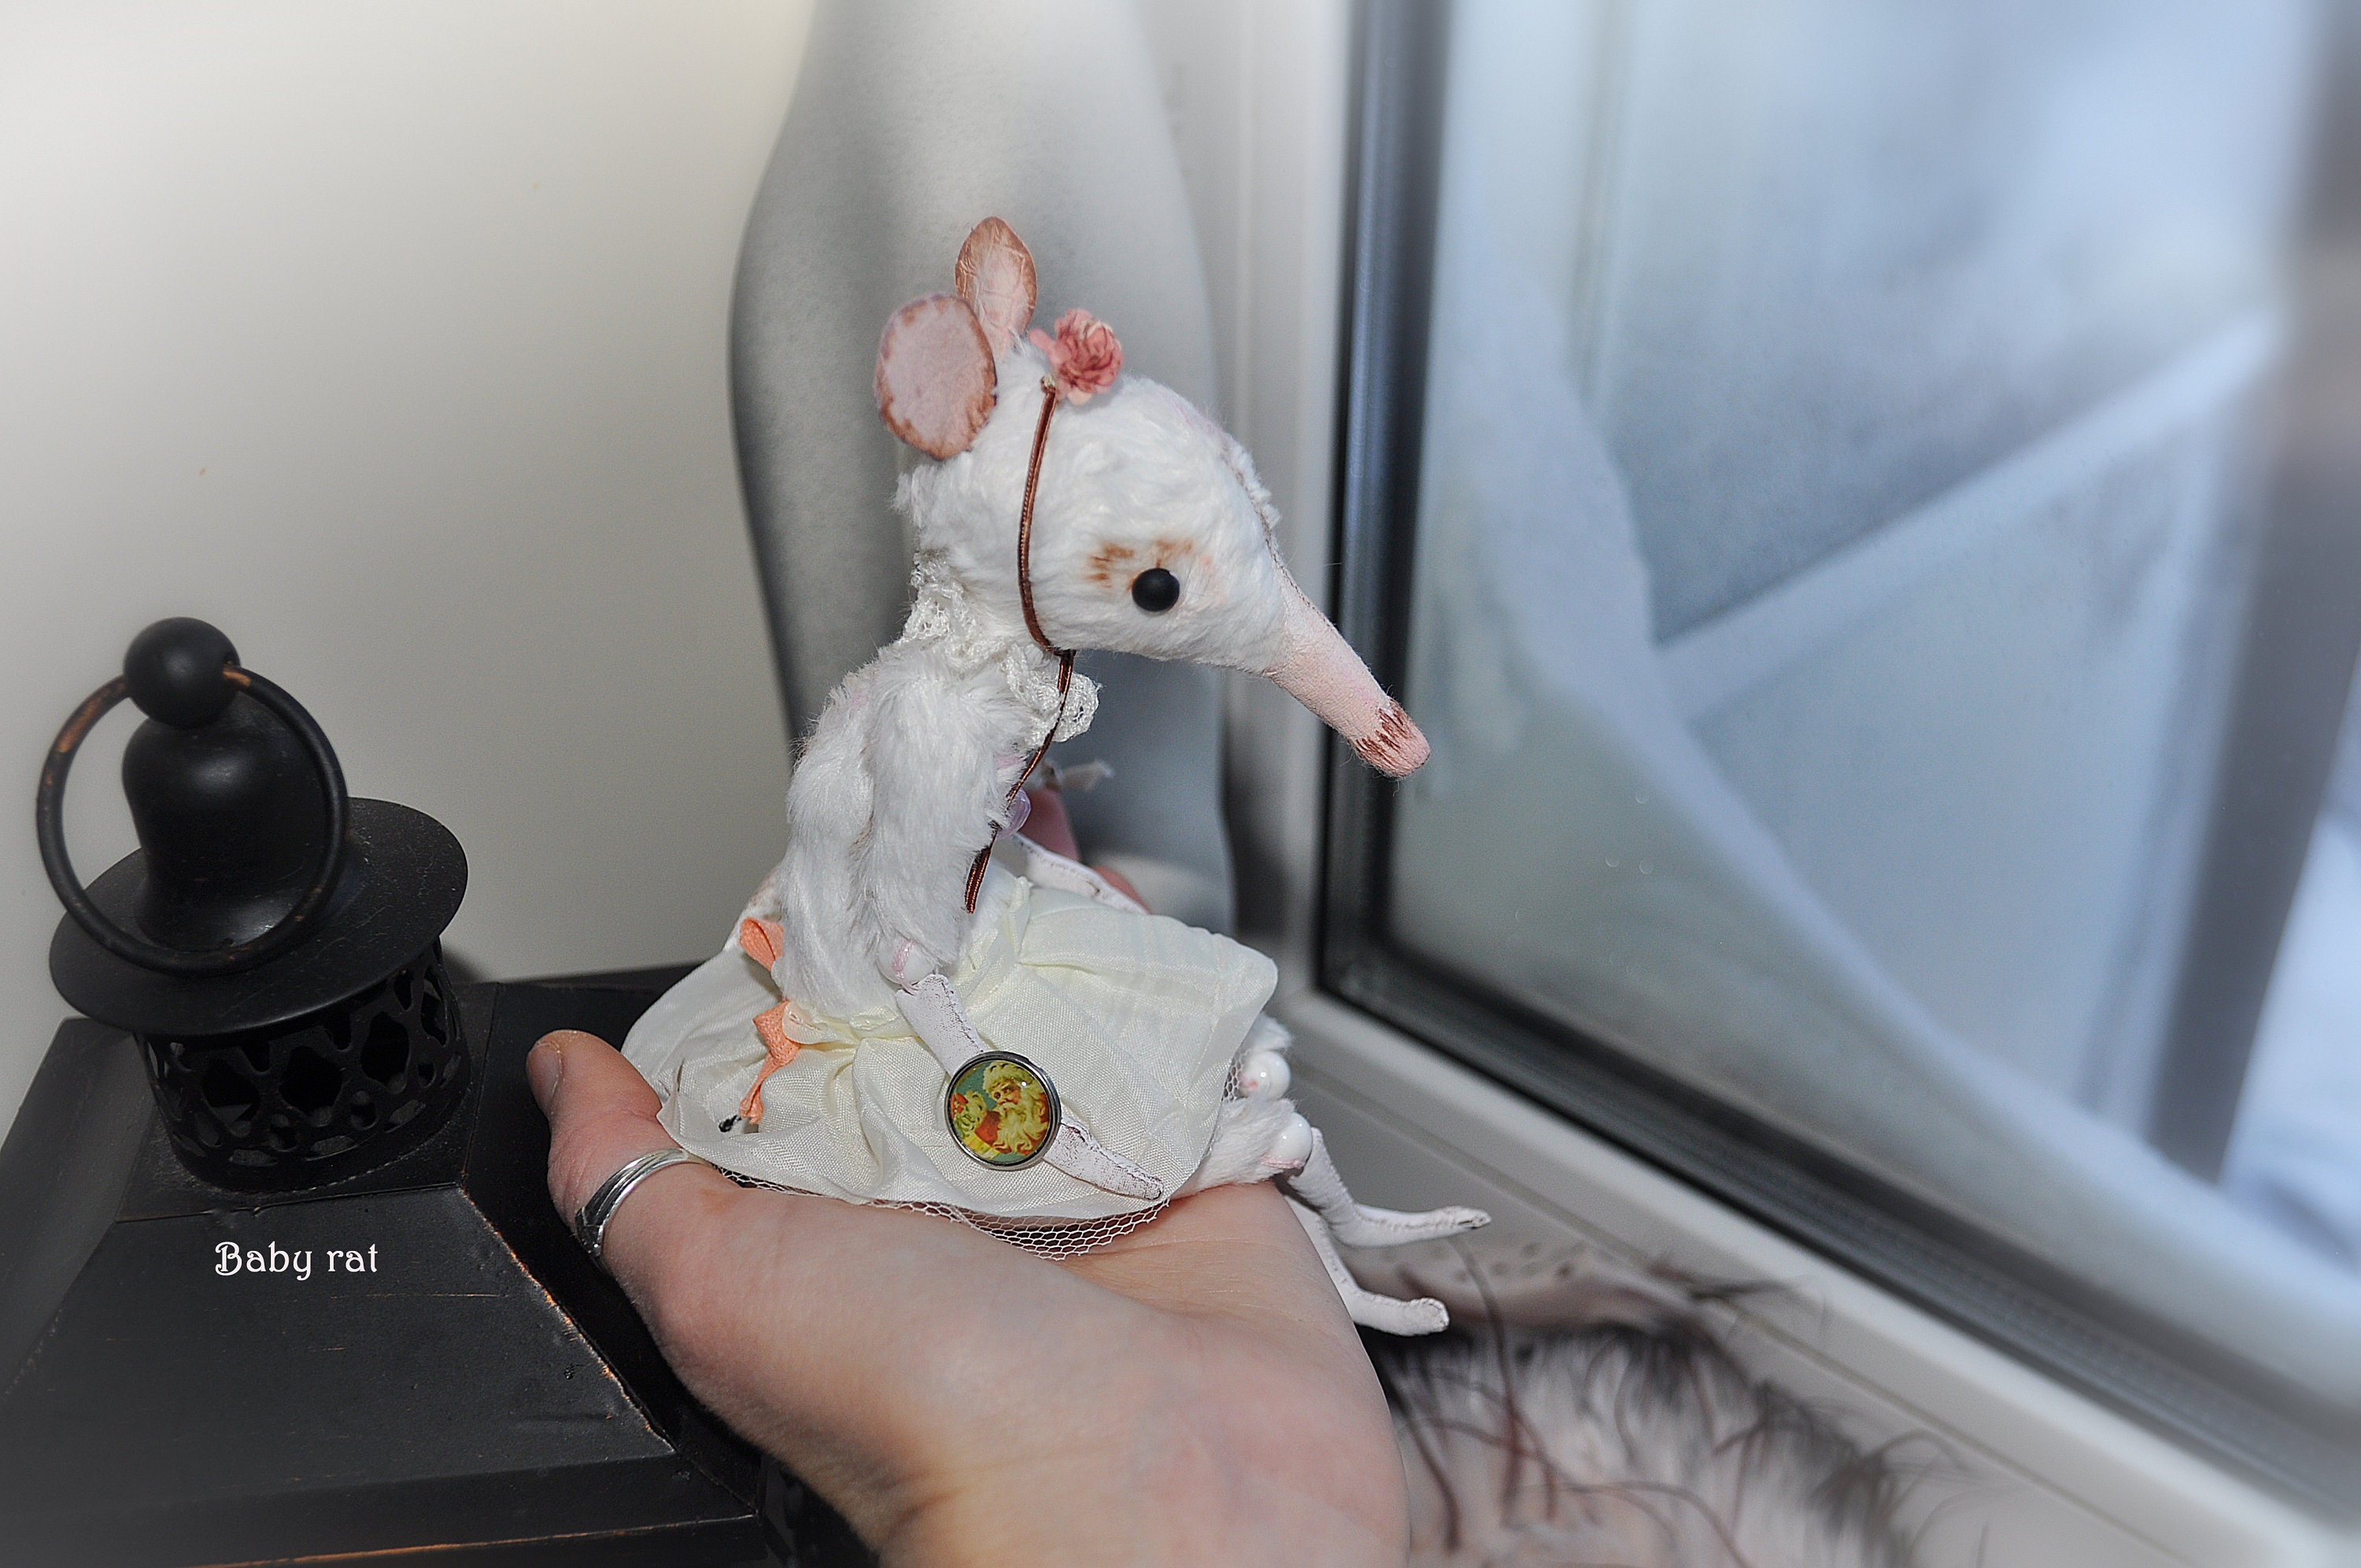 Mignon peluche souris jouet Ballet Rat série Bert grandes oreilles